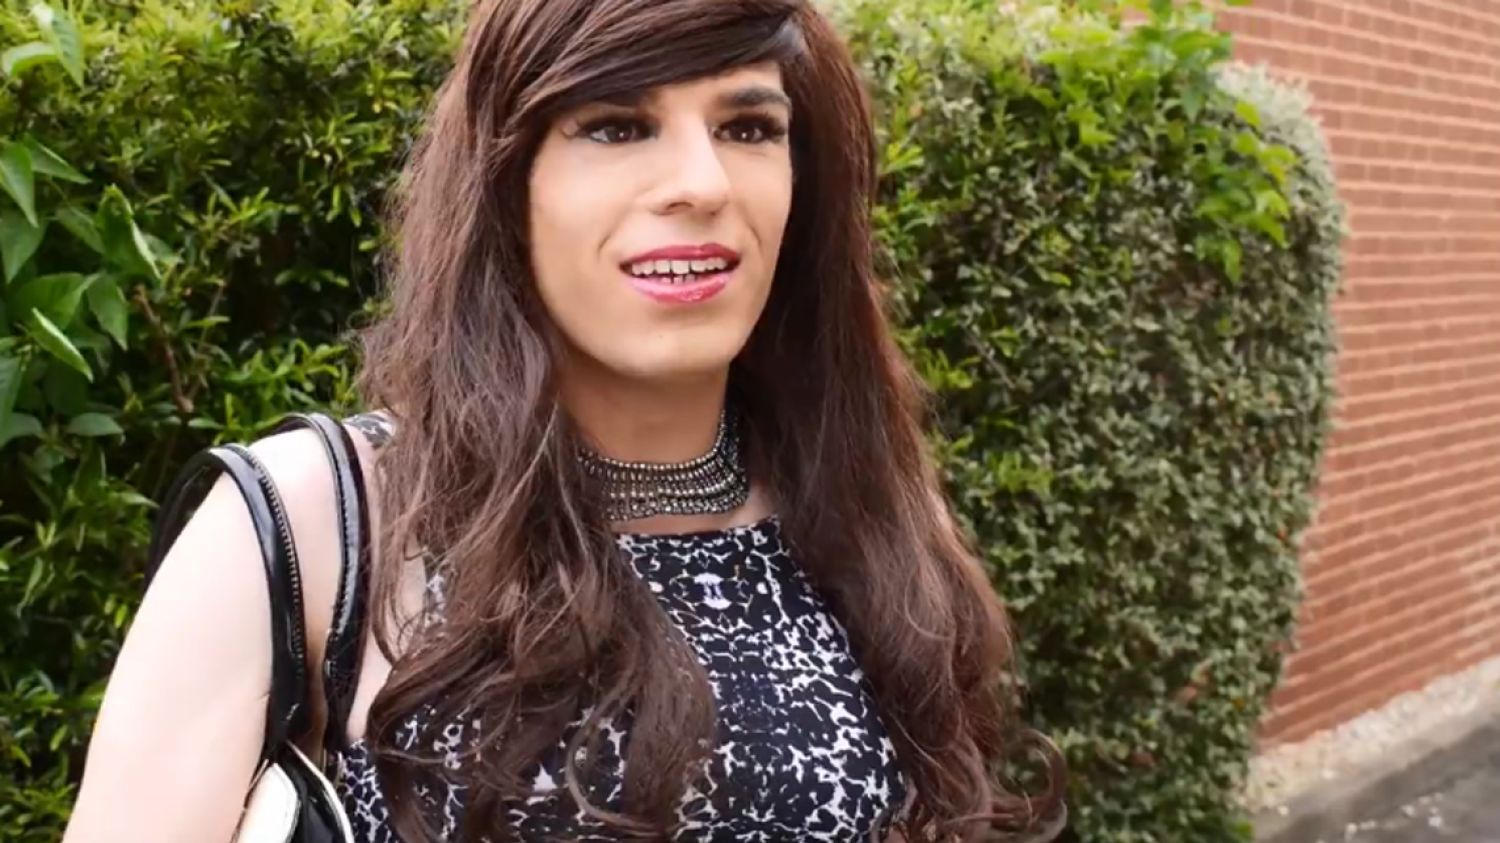 Бесплатные видео трансгендеров. Трансгендер натуральная красота. Трансгендер Нигина. Самые молодые трансгендеры. Фредерик Бель трансгендер.